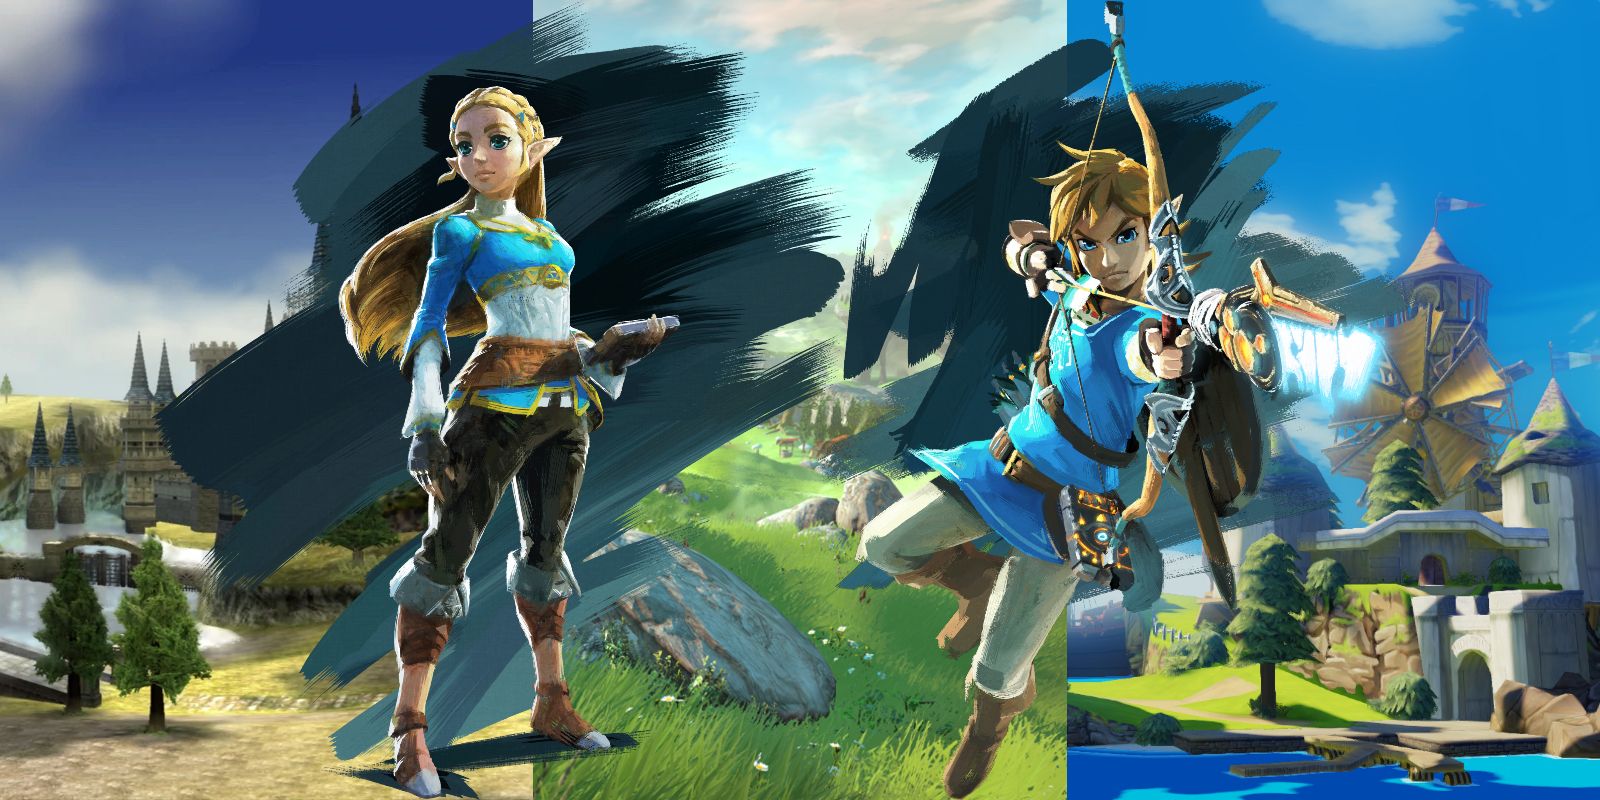 Hyrule Map: The Legend of Zelda: The Wind Waker